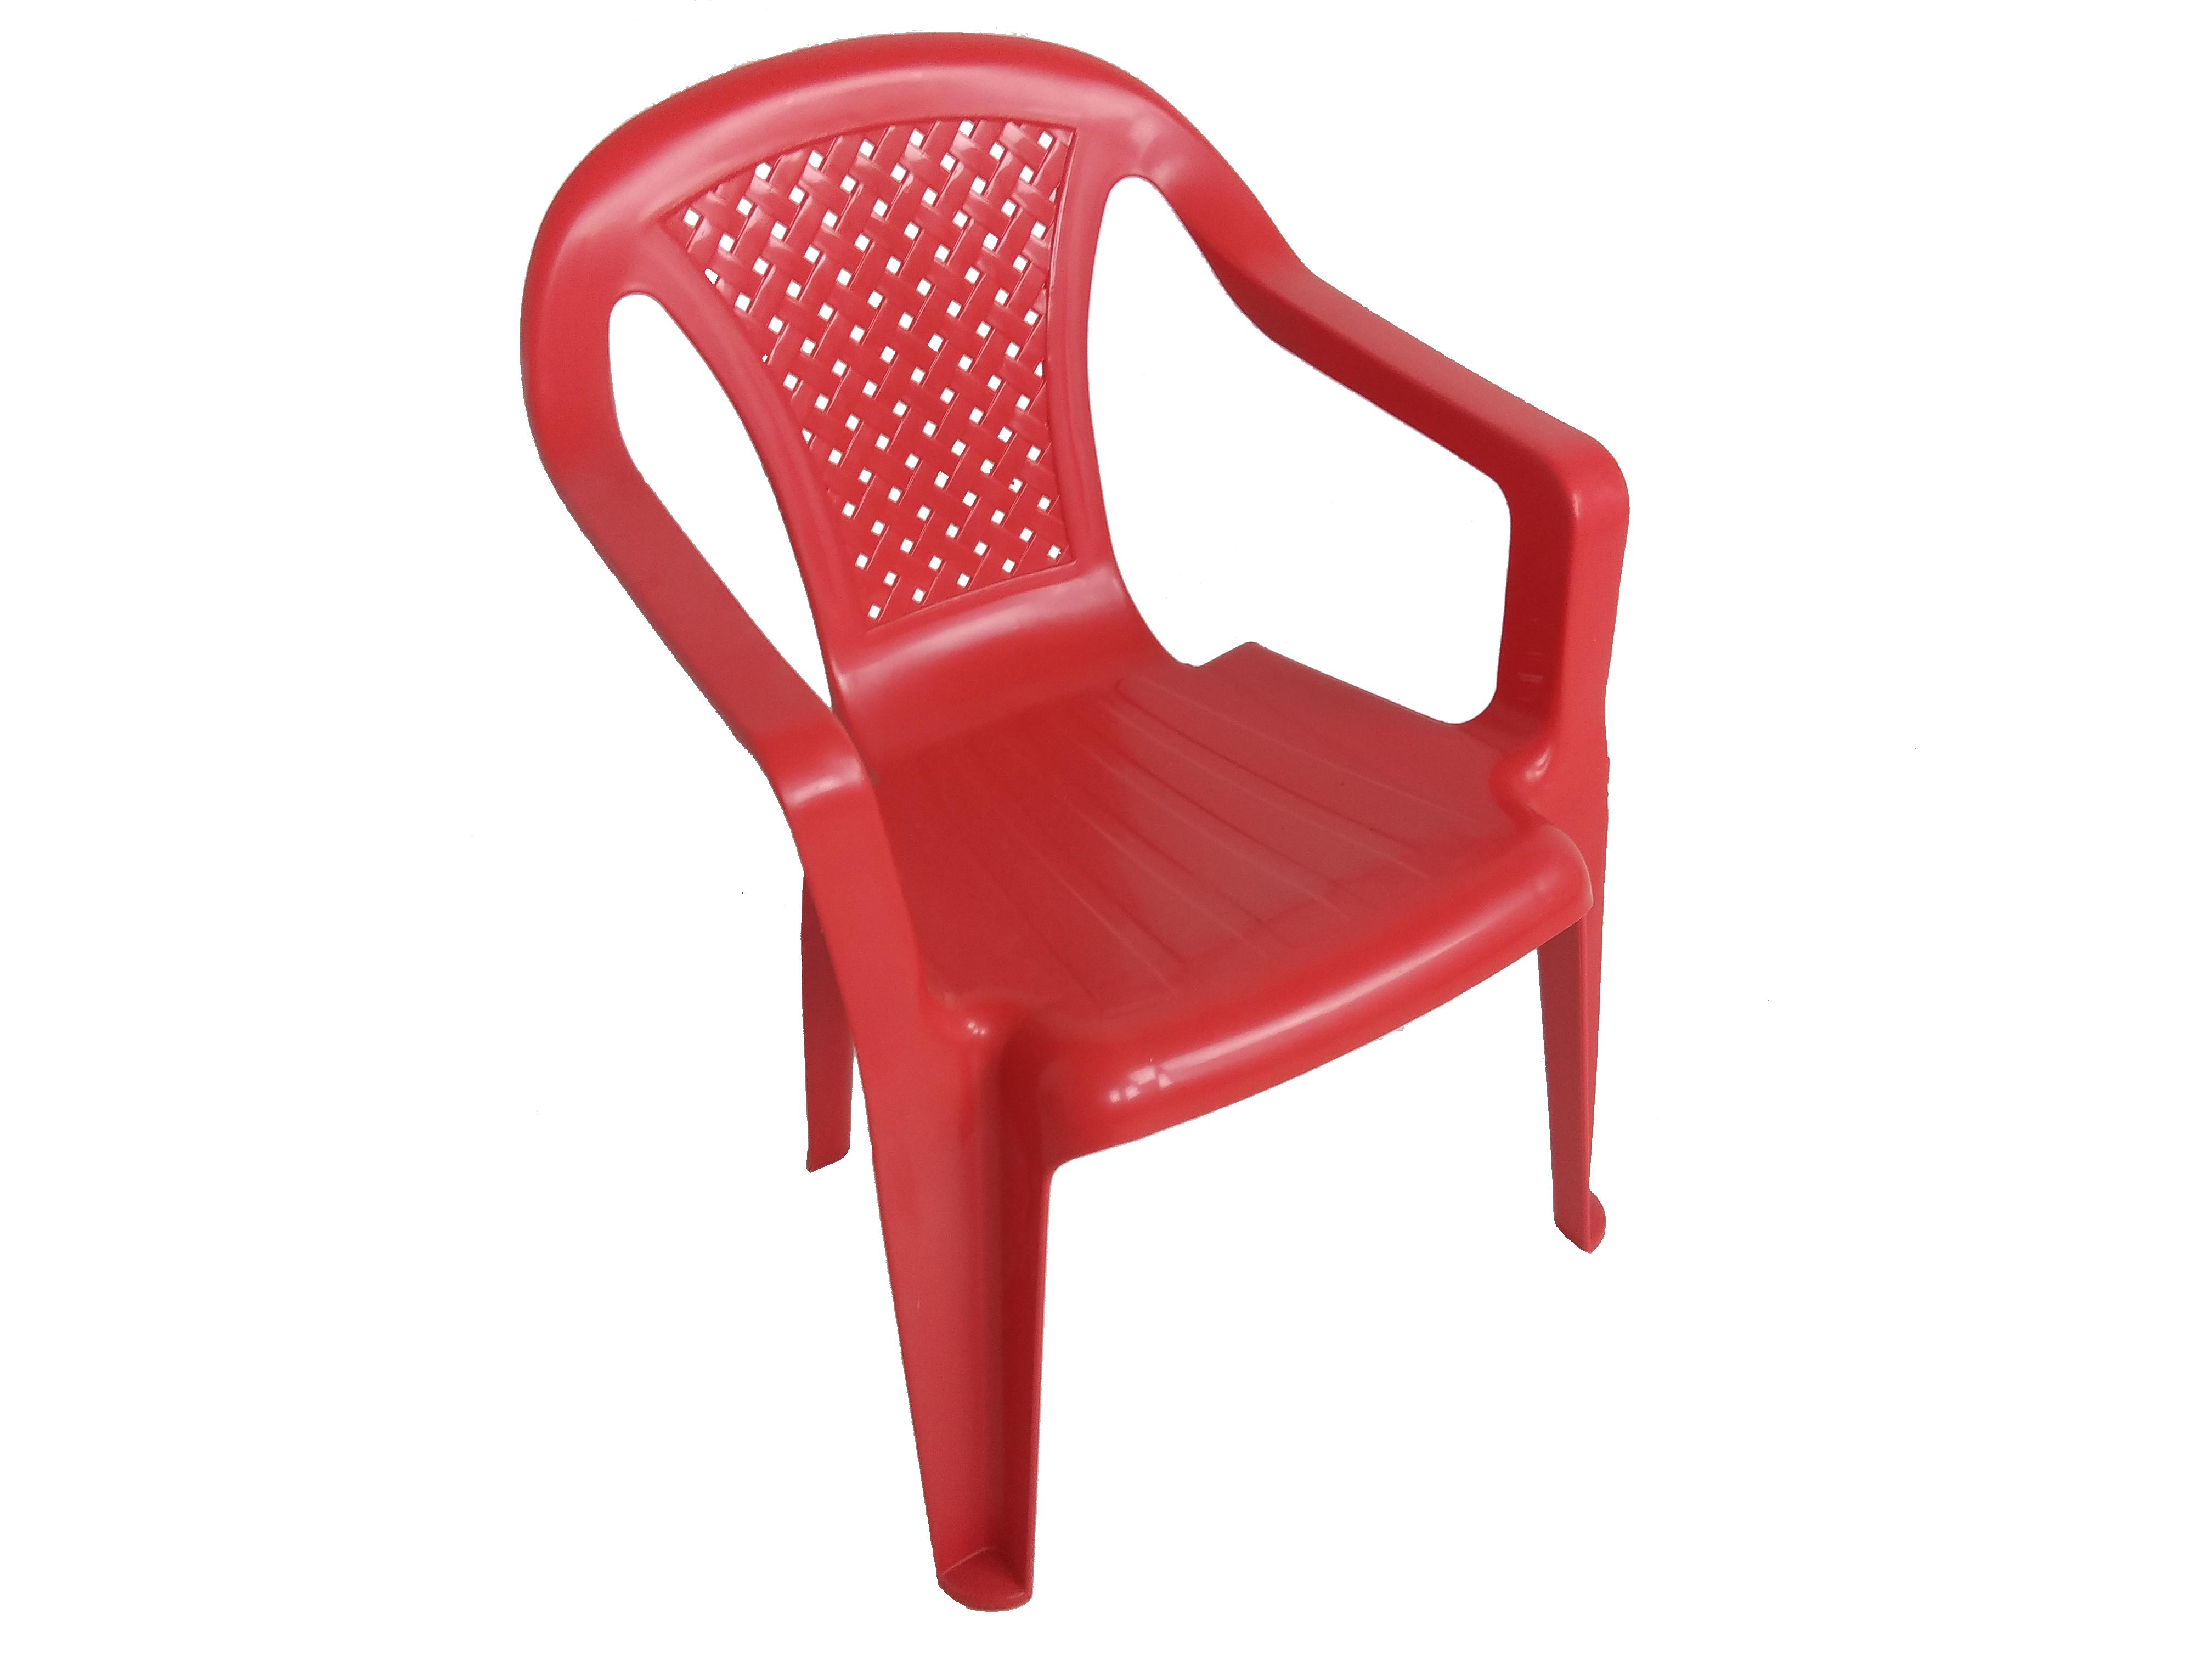 Dětská plastová židlička Bambini červená